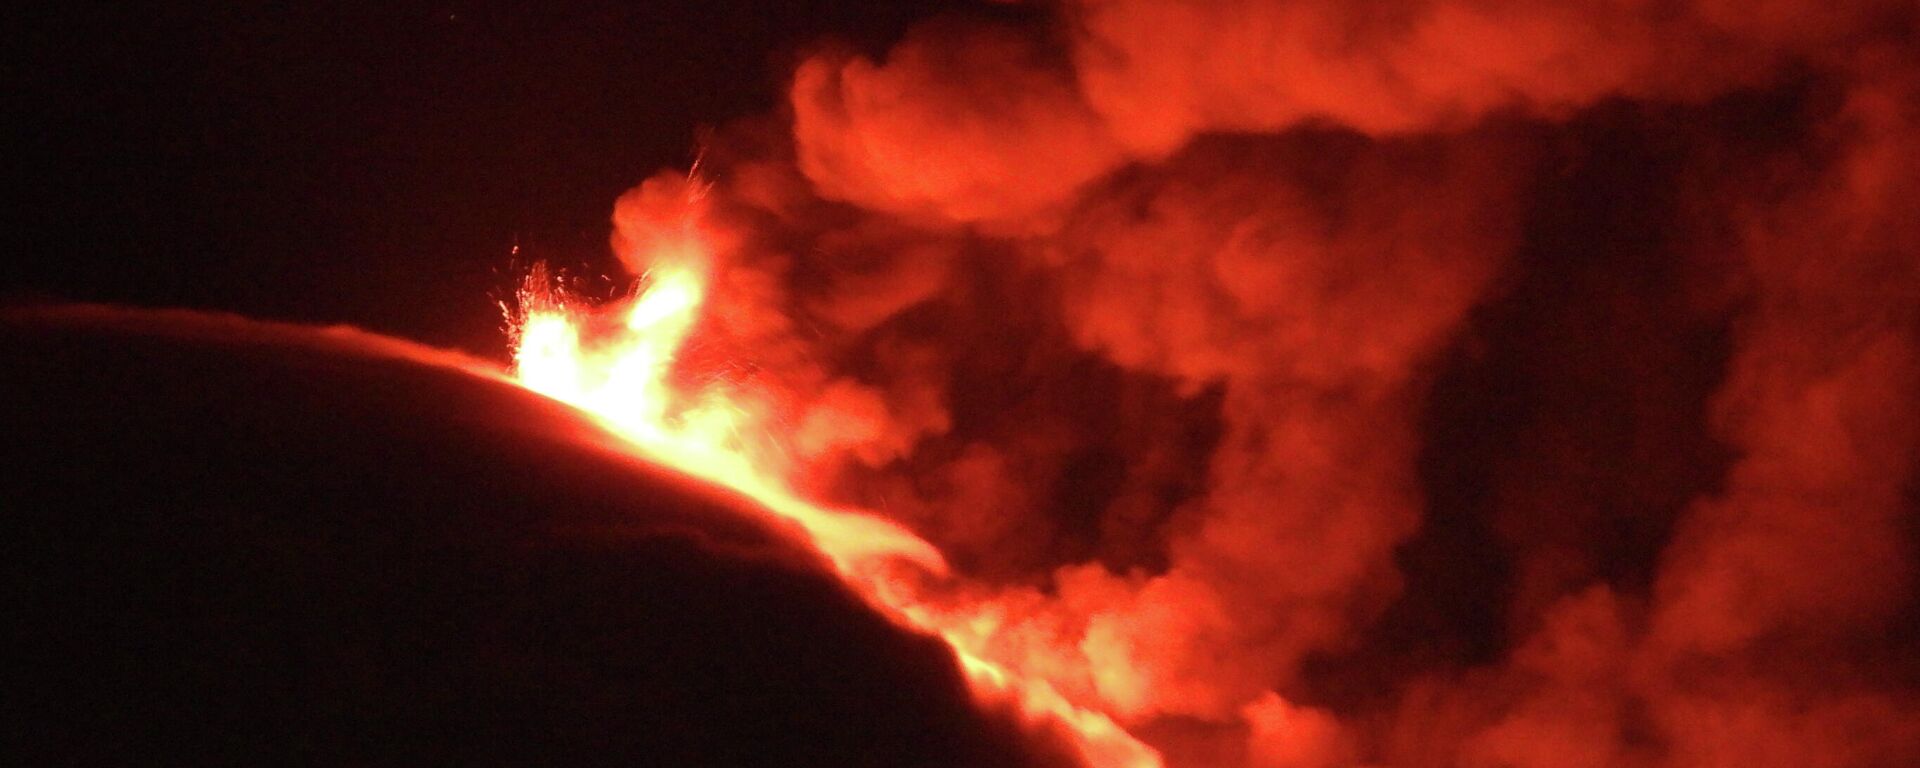 El volcán Etna durante una erupción el 10 de marzo - Sputnik Mundo, 1920, 24.03.2021